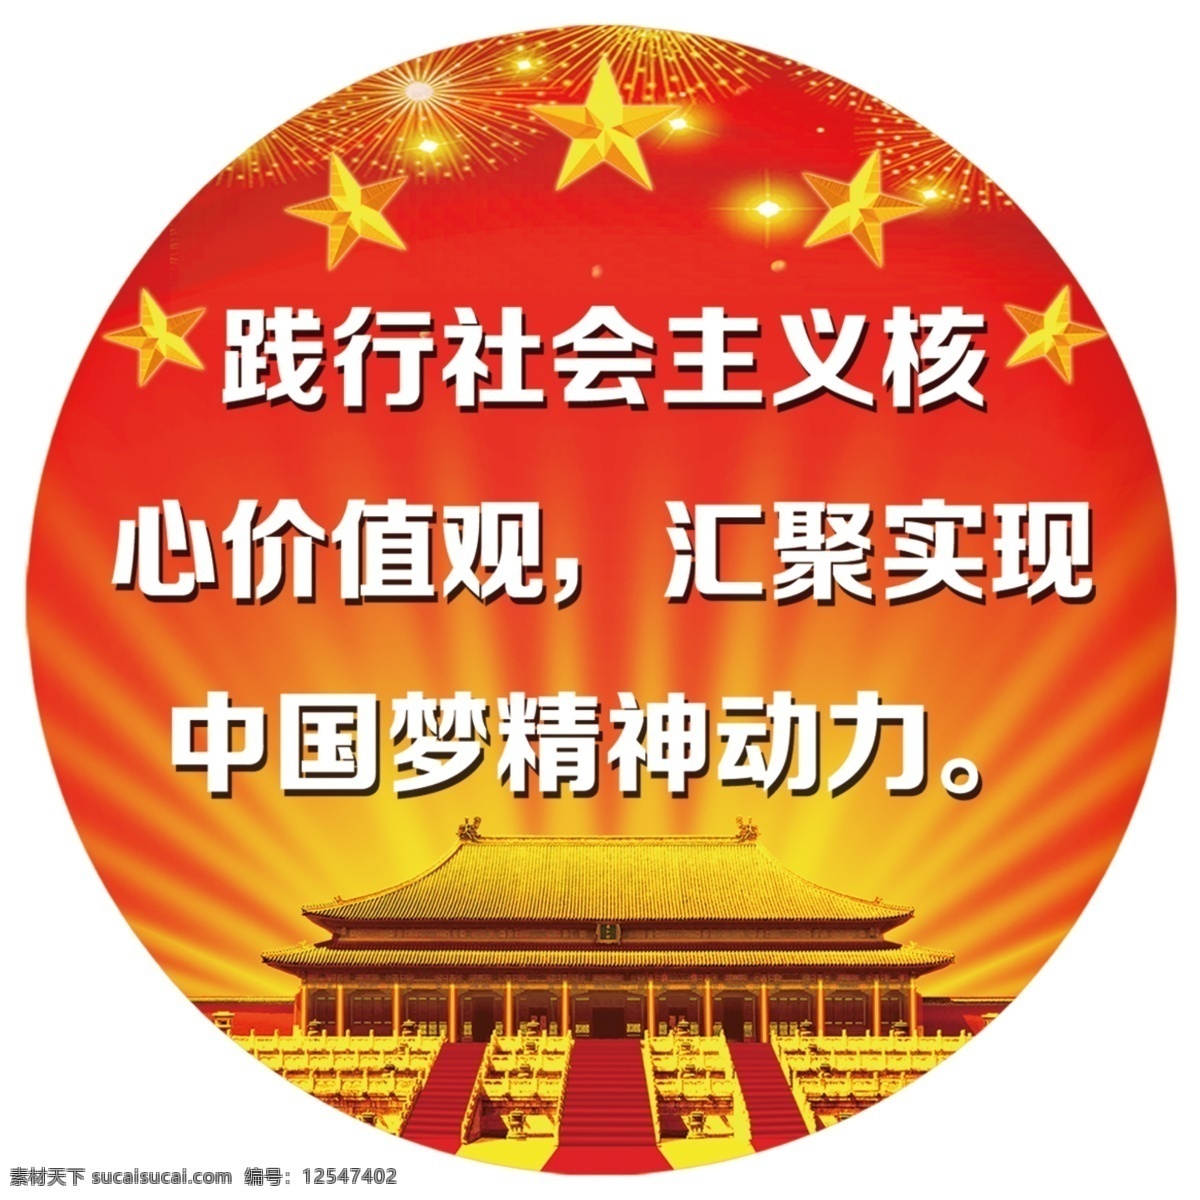 核心价值观 价值观 中国梦 标语 圆形